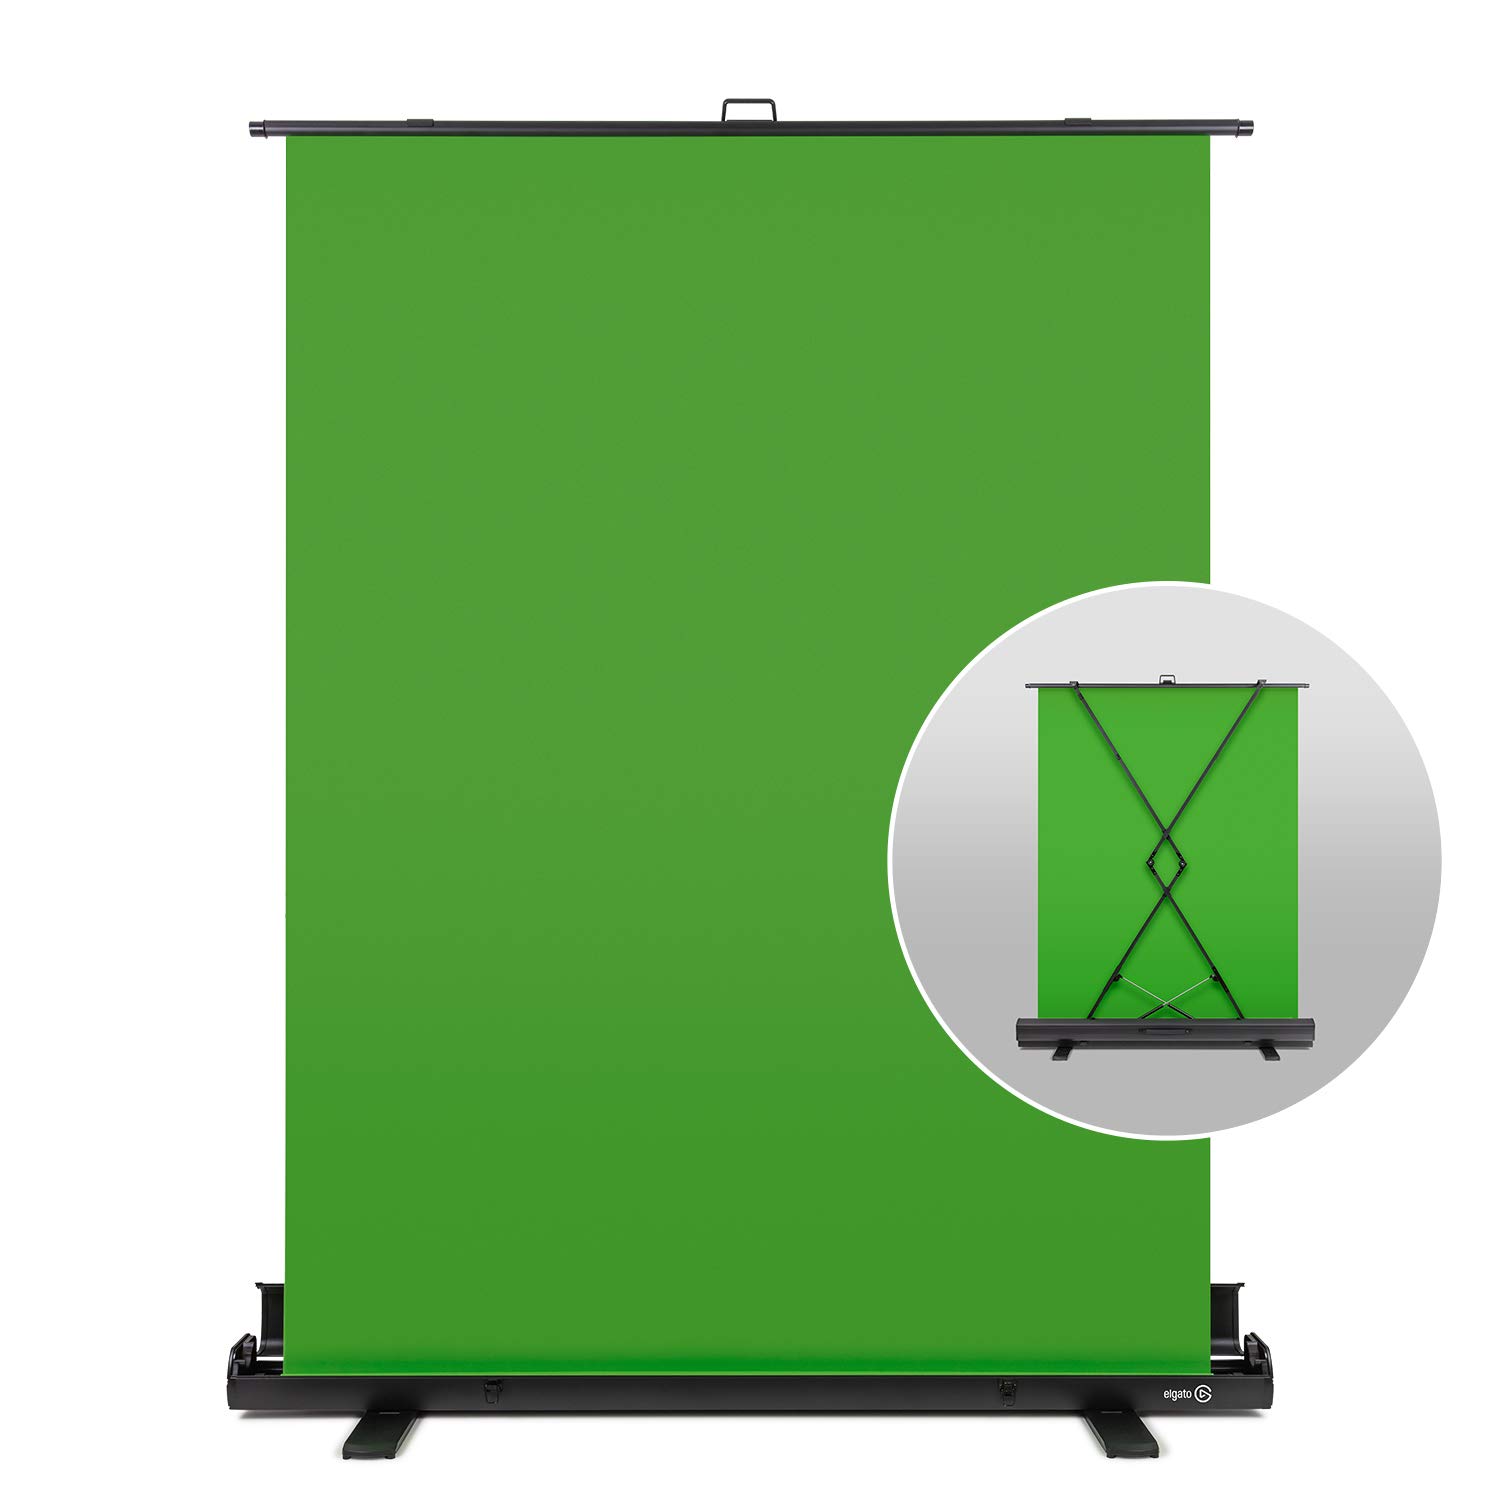 Hãy sắm ngay Elgato Green Screen để tạo ra những hình ảnh sống động và chân thật hơn. Với chất lượng tuyệt vời, bạn sẽ có thể thỏa sức phát triển năng lực của mình trong một không gian hoàn hảo với nền xanh kỹ thuật số.